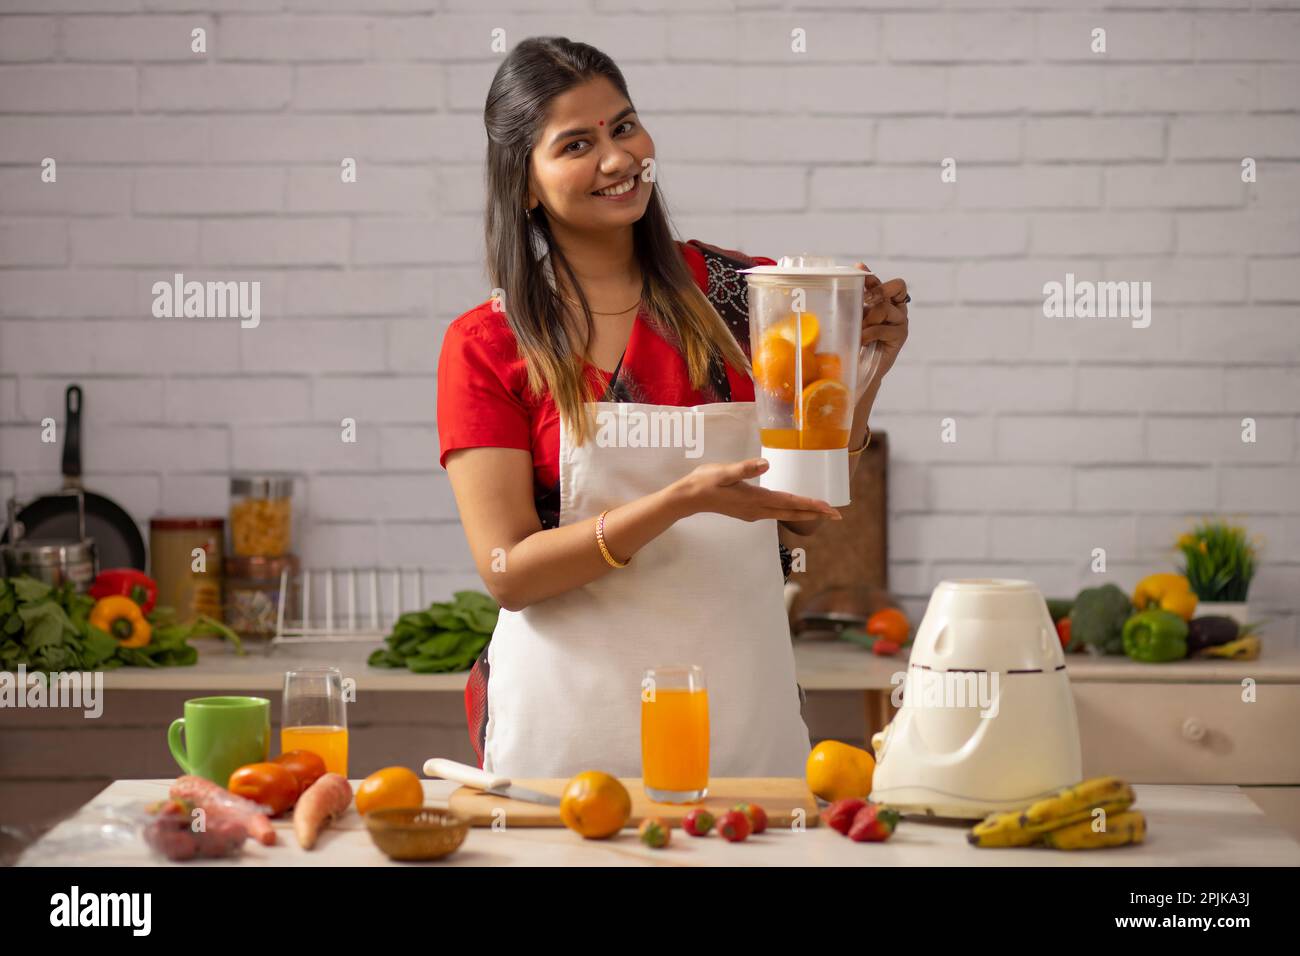 Smiling woman making orange juice in kitchen Stock Photo